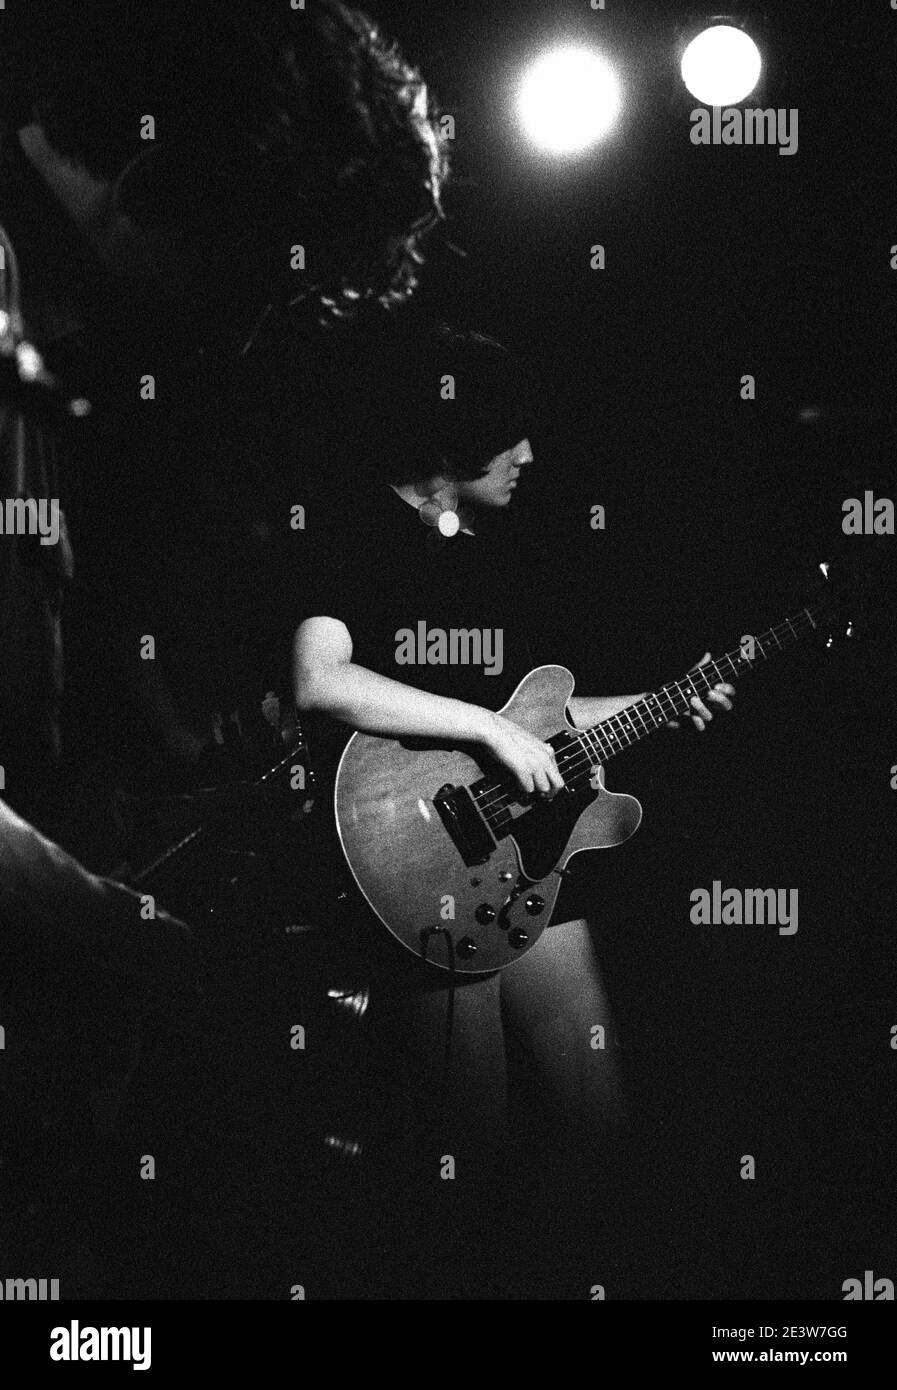 Dean Wareham and Naomi Yang of Galaxie 500 performing at Woody's, New York, NY, USA, July 16th 1990. Stock Photo